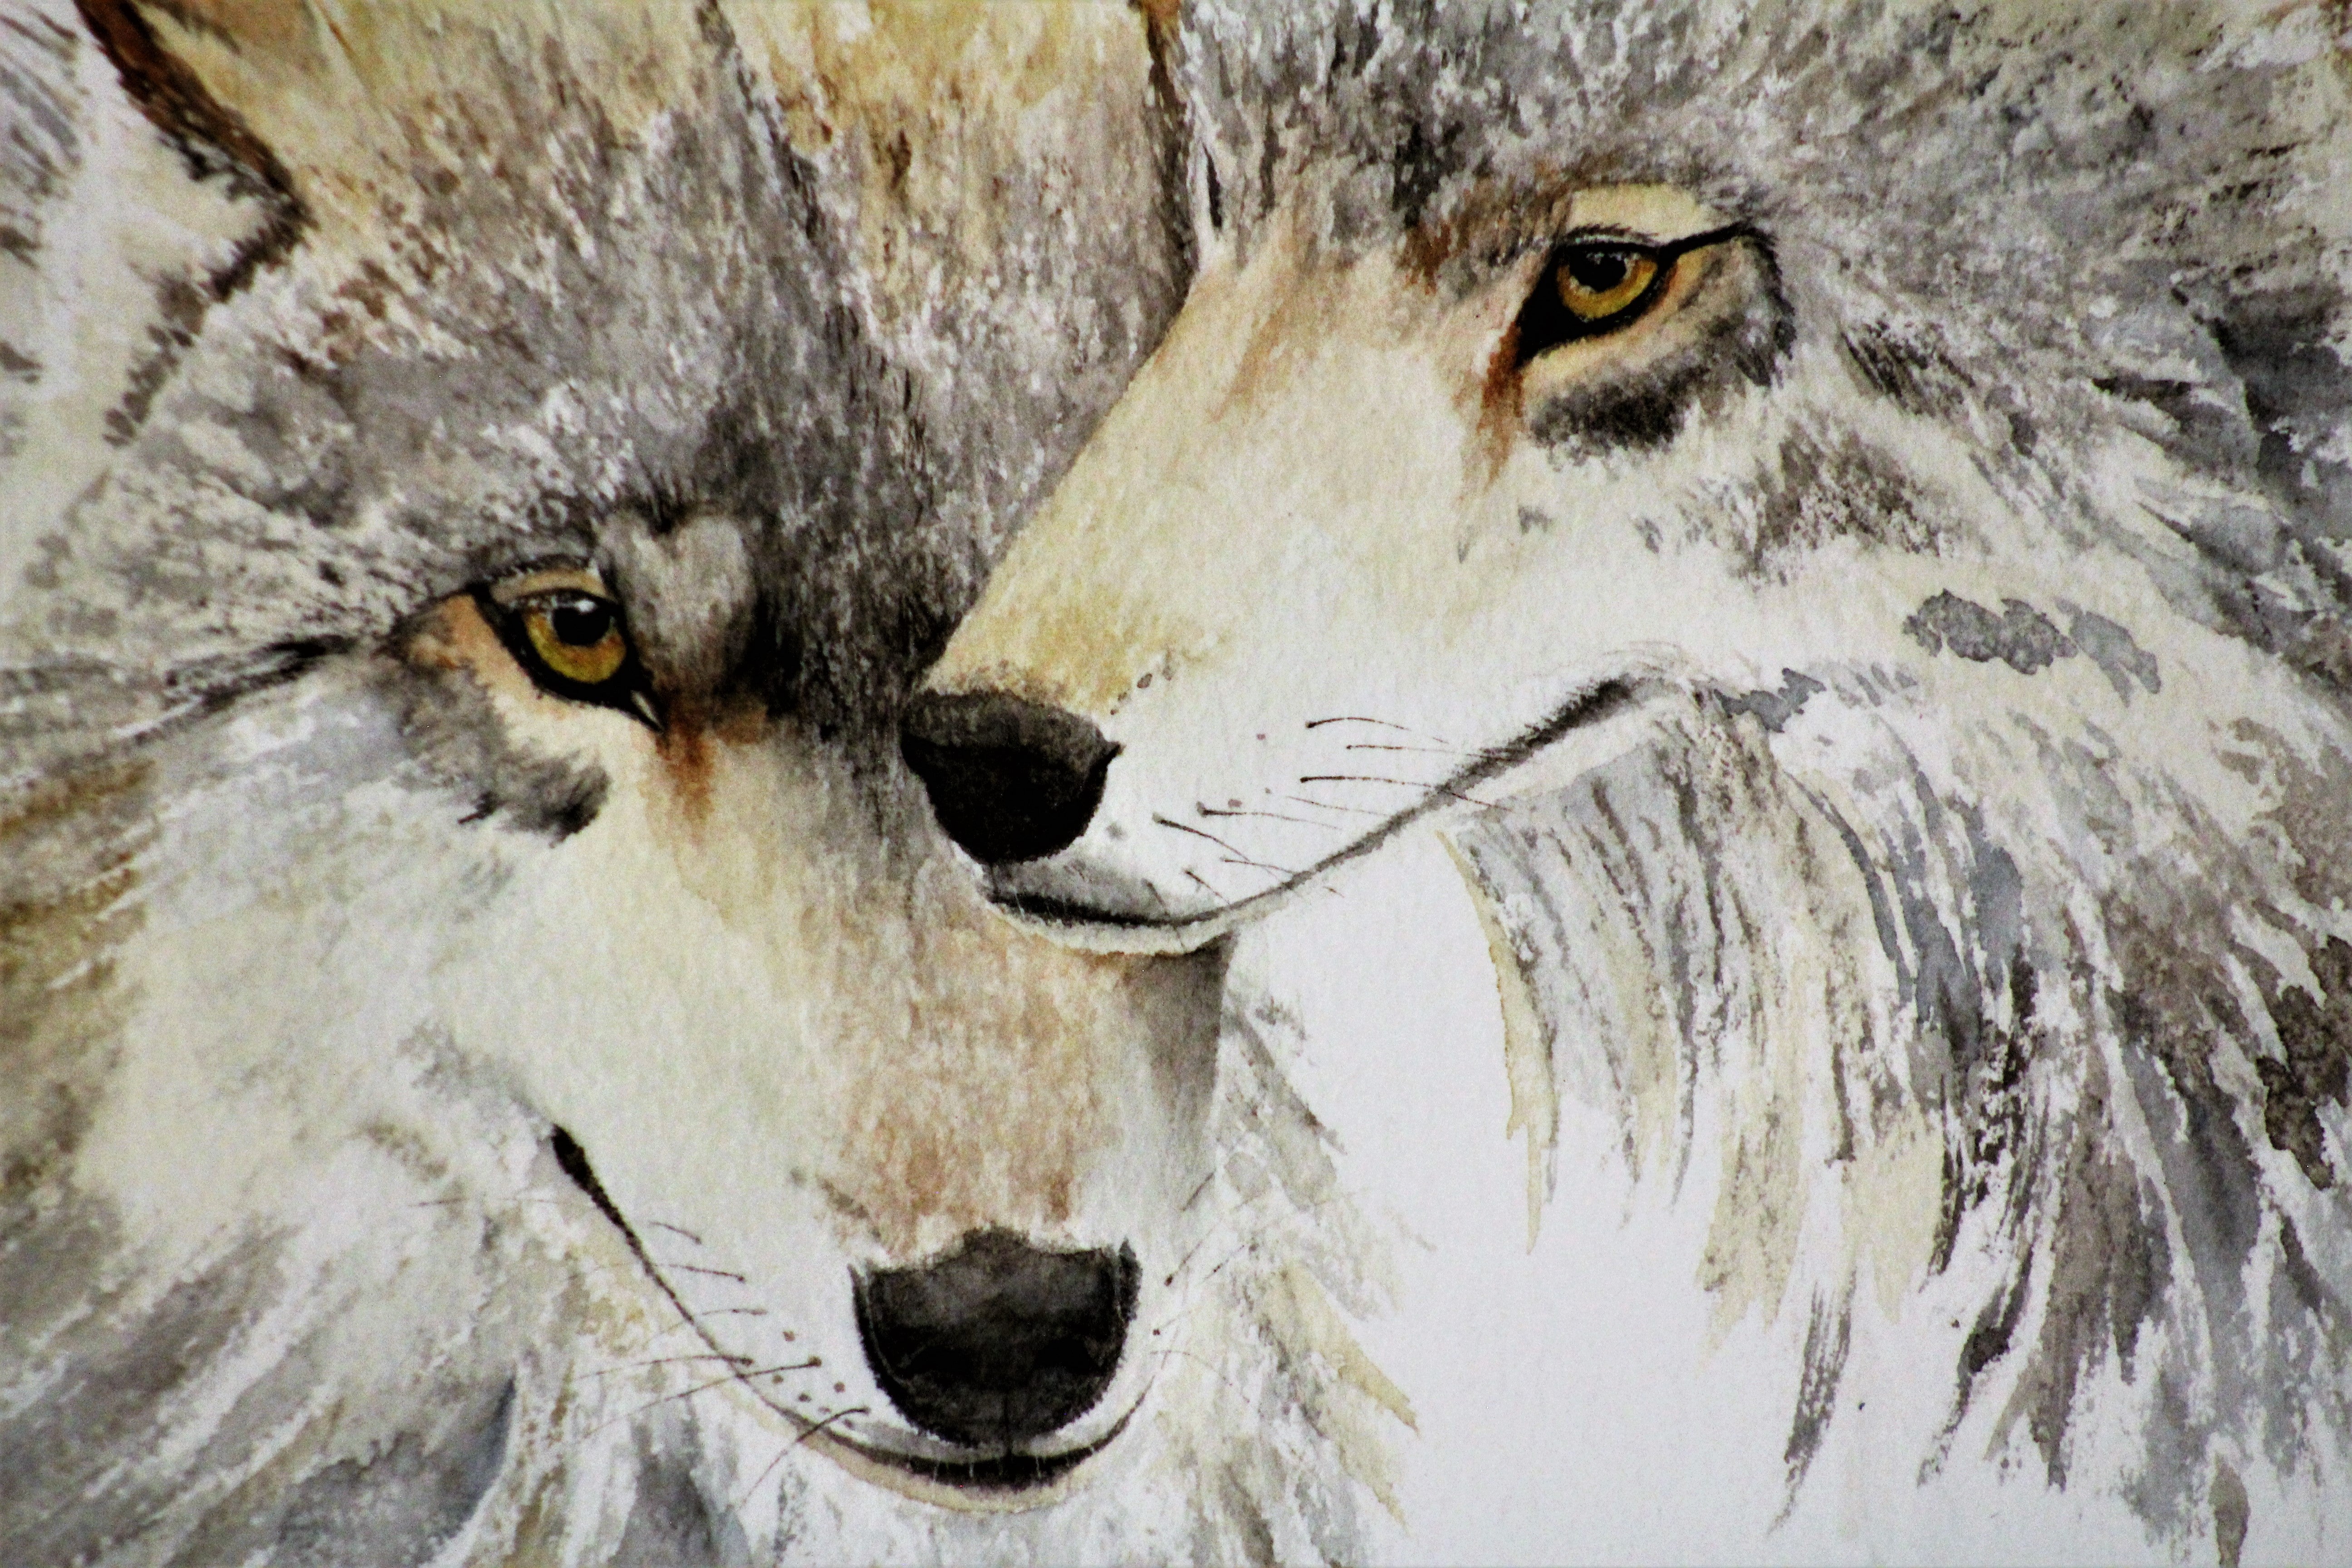 Wolf Watercolor by Nancy Overholtz